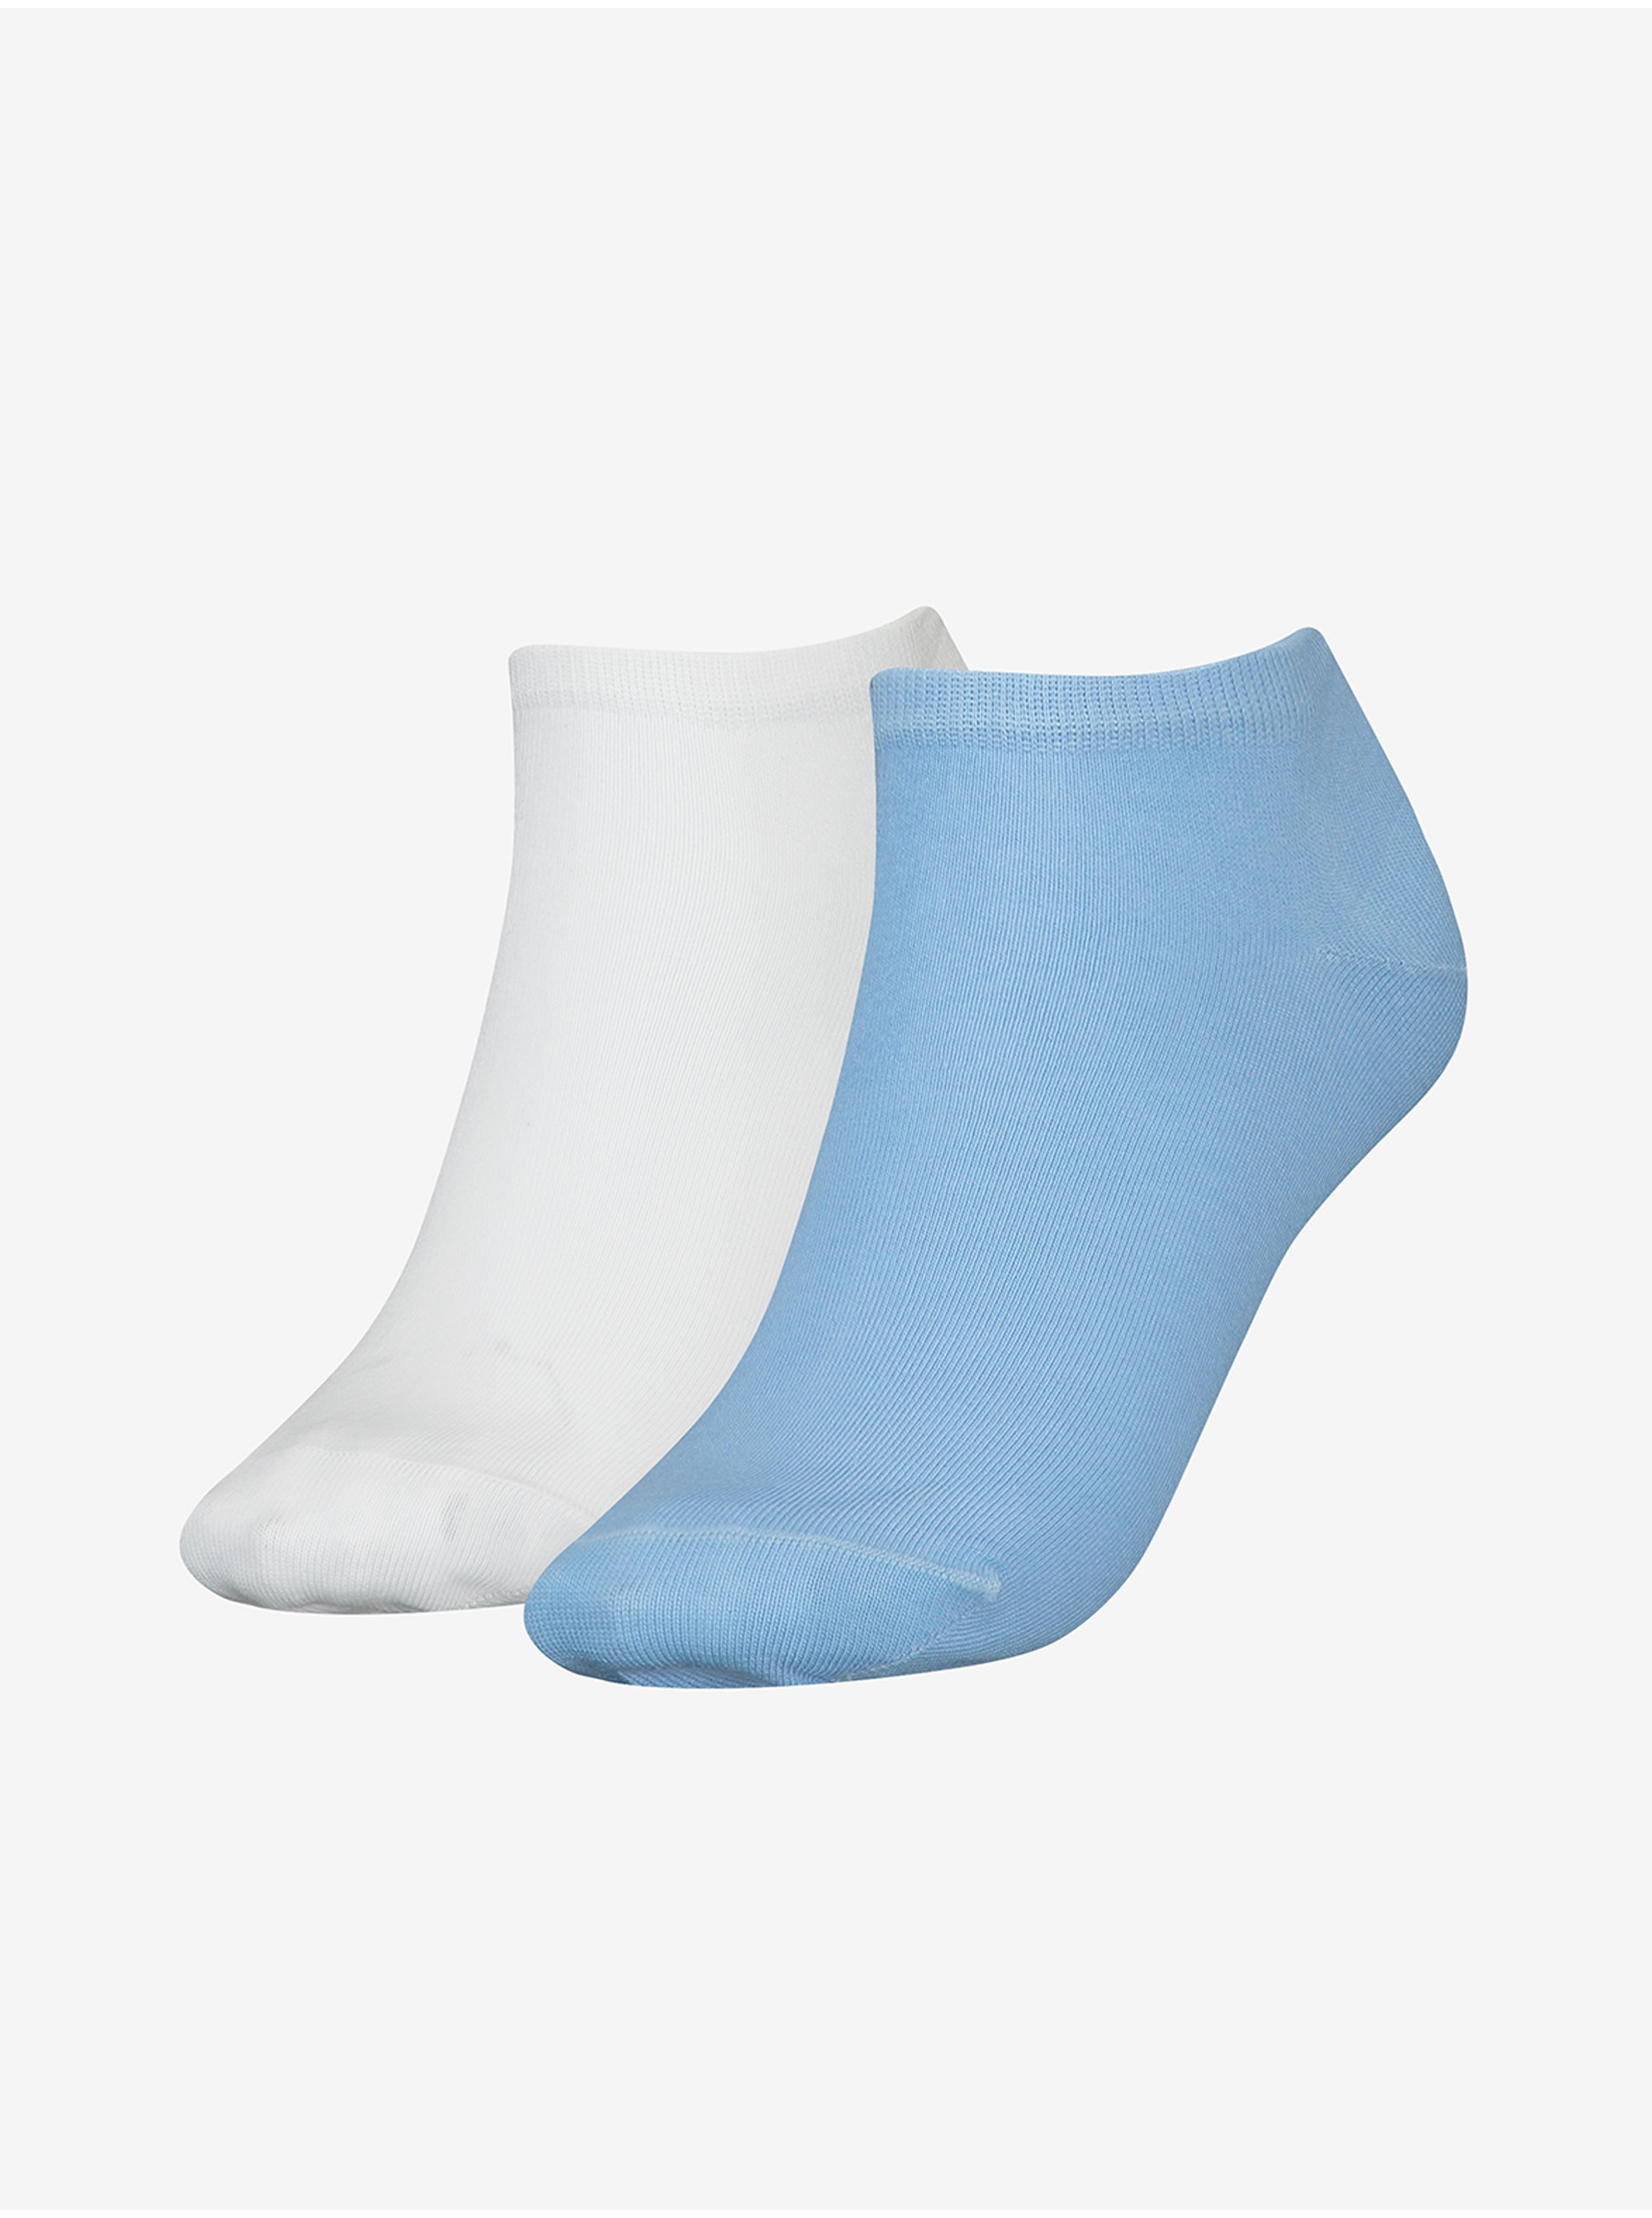 E-shop Súprava dvoch párov dámskych ponožiek v bielej a modrej farbe Tommy Hilfiger